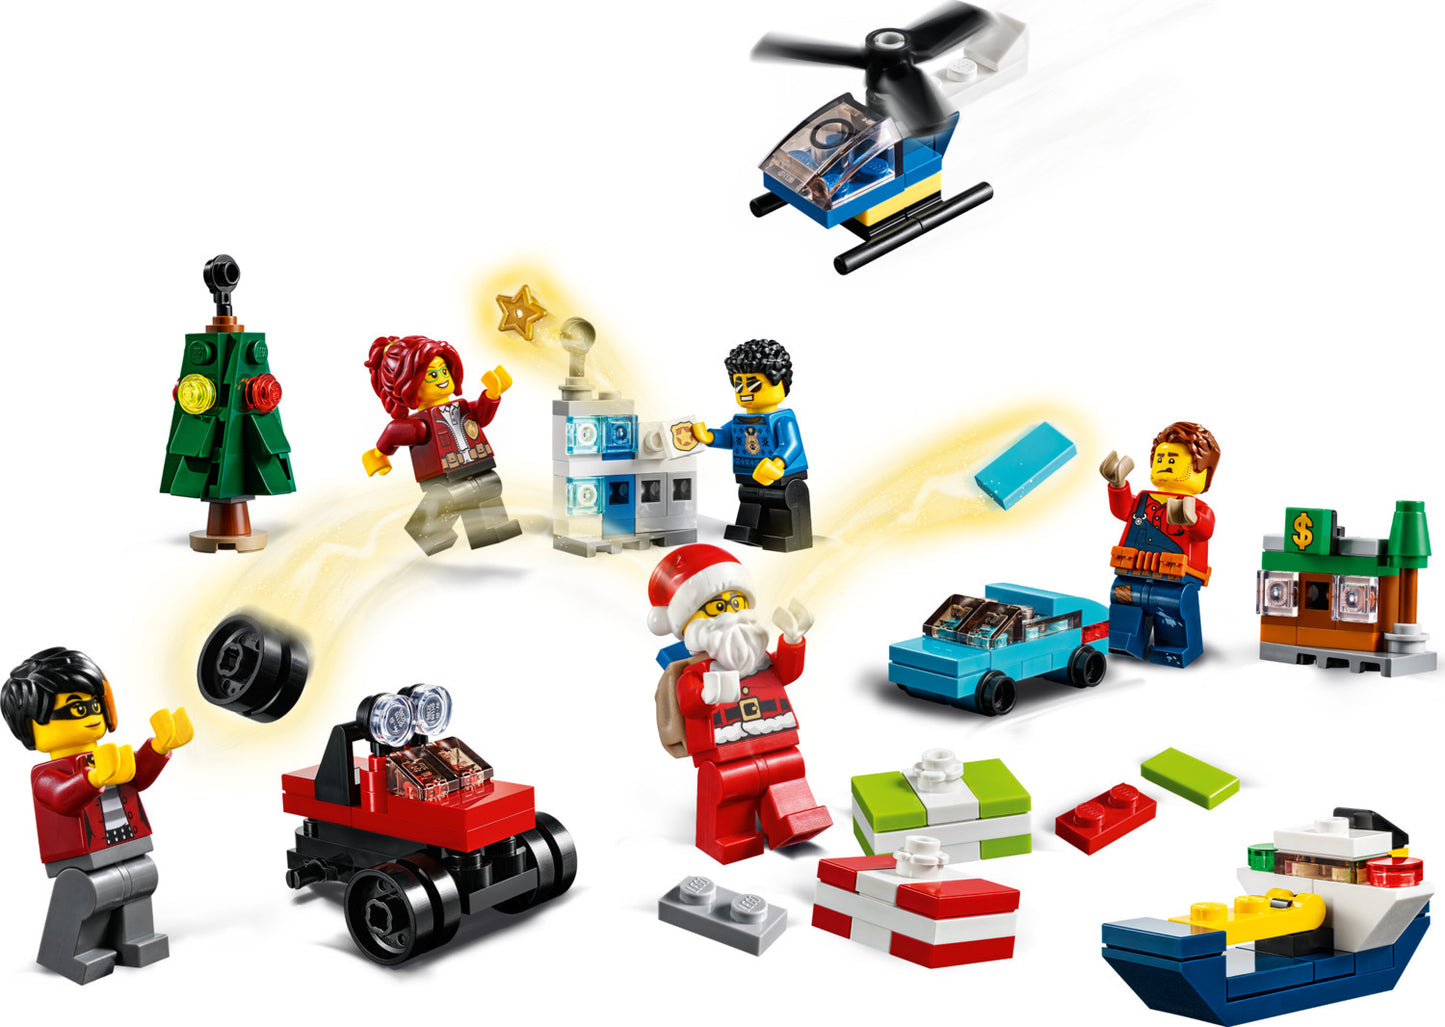 LEGO® City Advent 2020